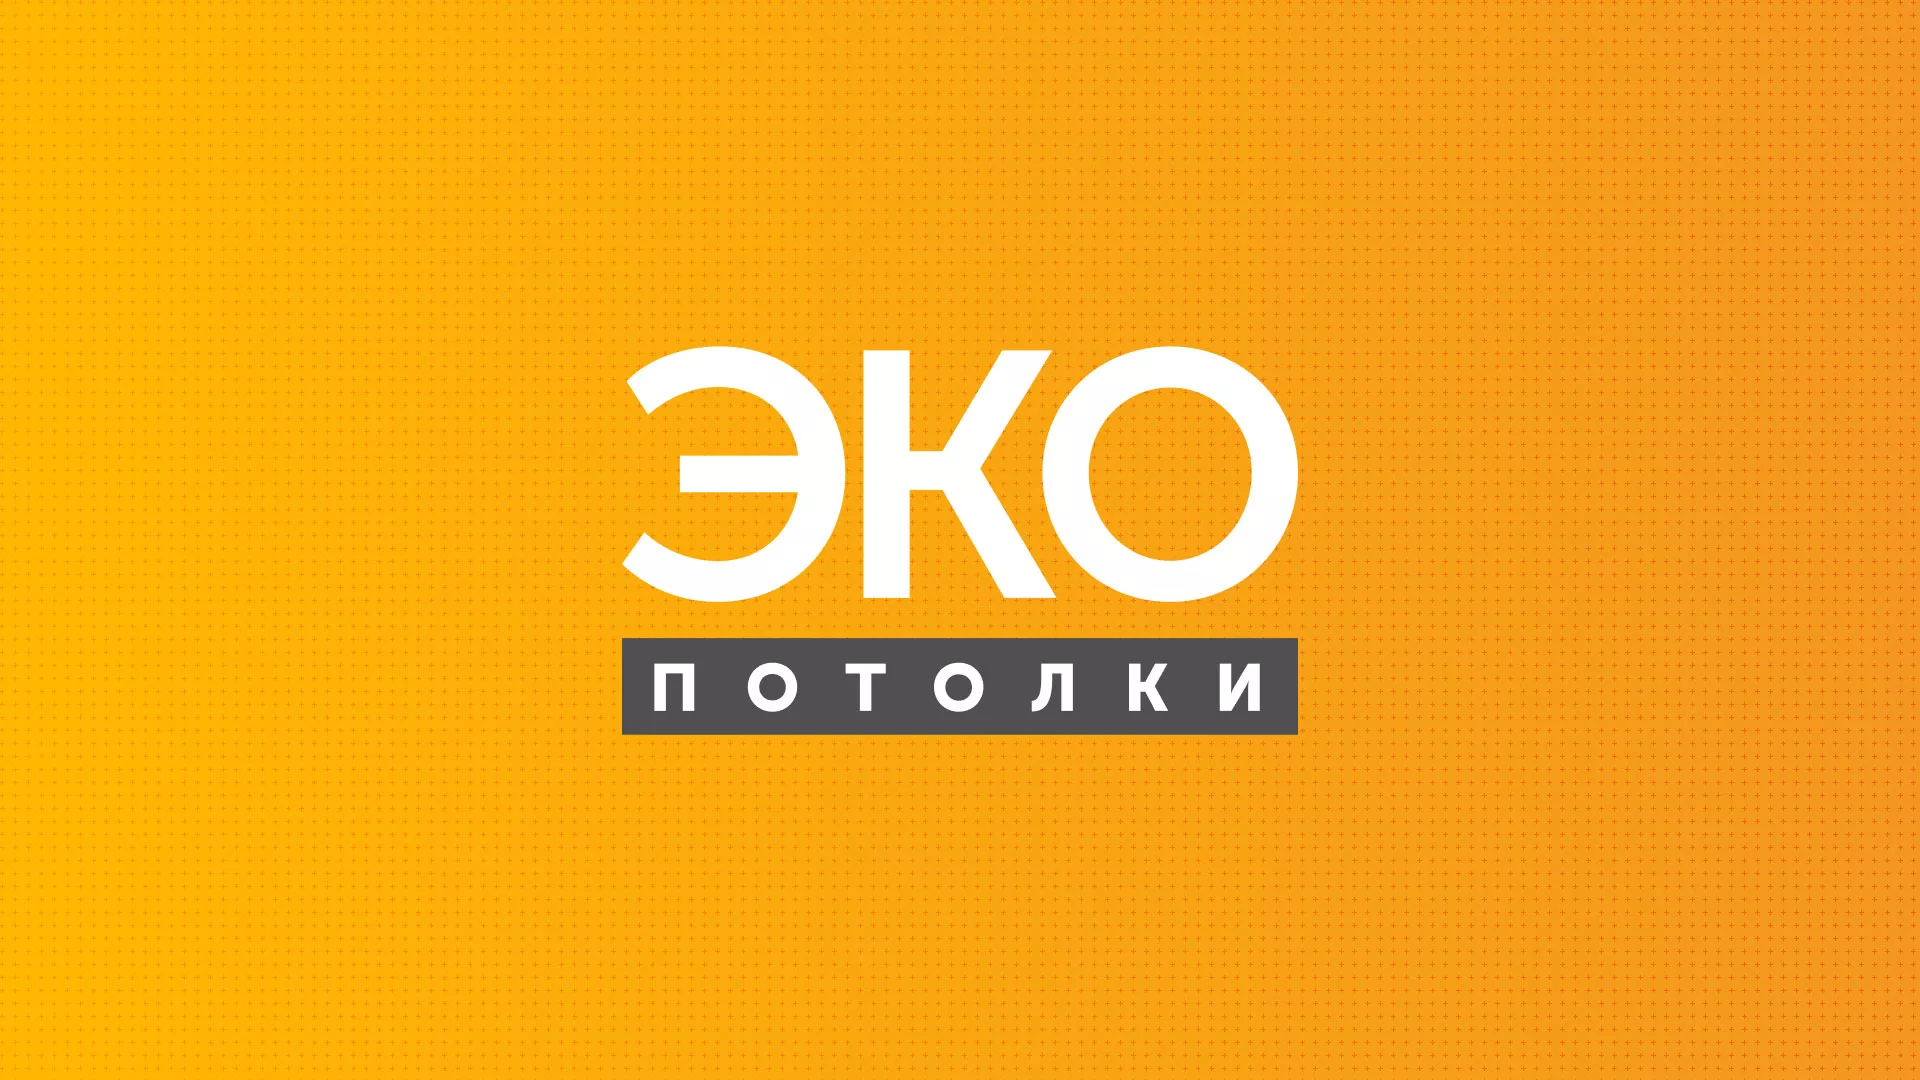 Разработка сайта по натяжным потолкам «Эко Потолки» в Волгограде